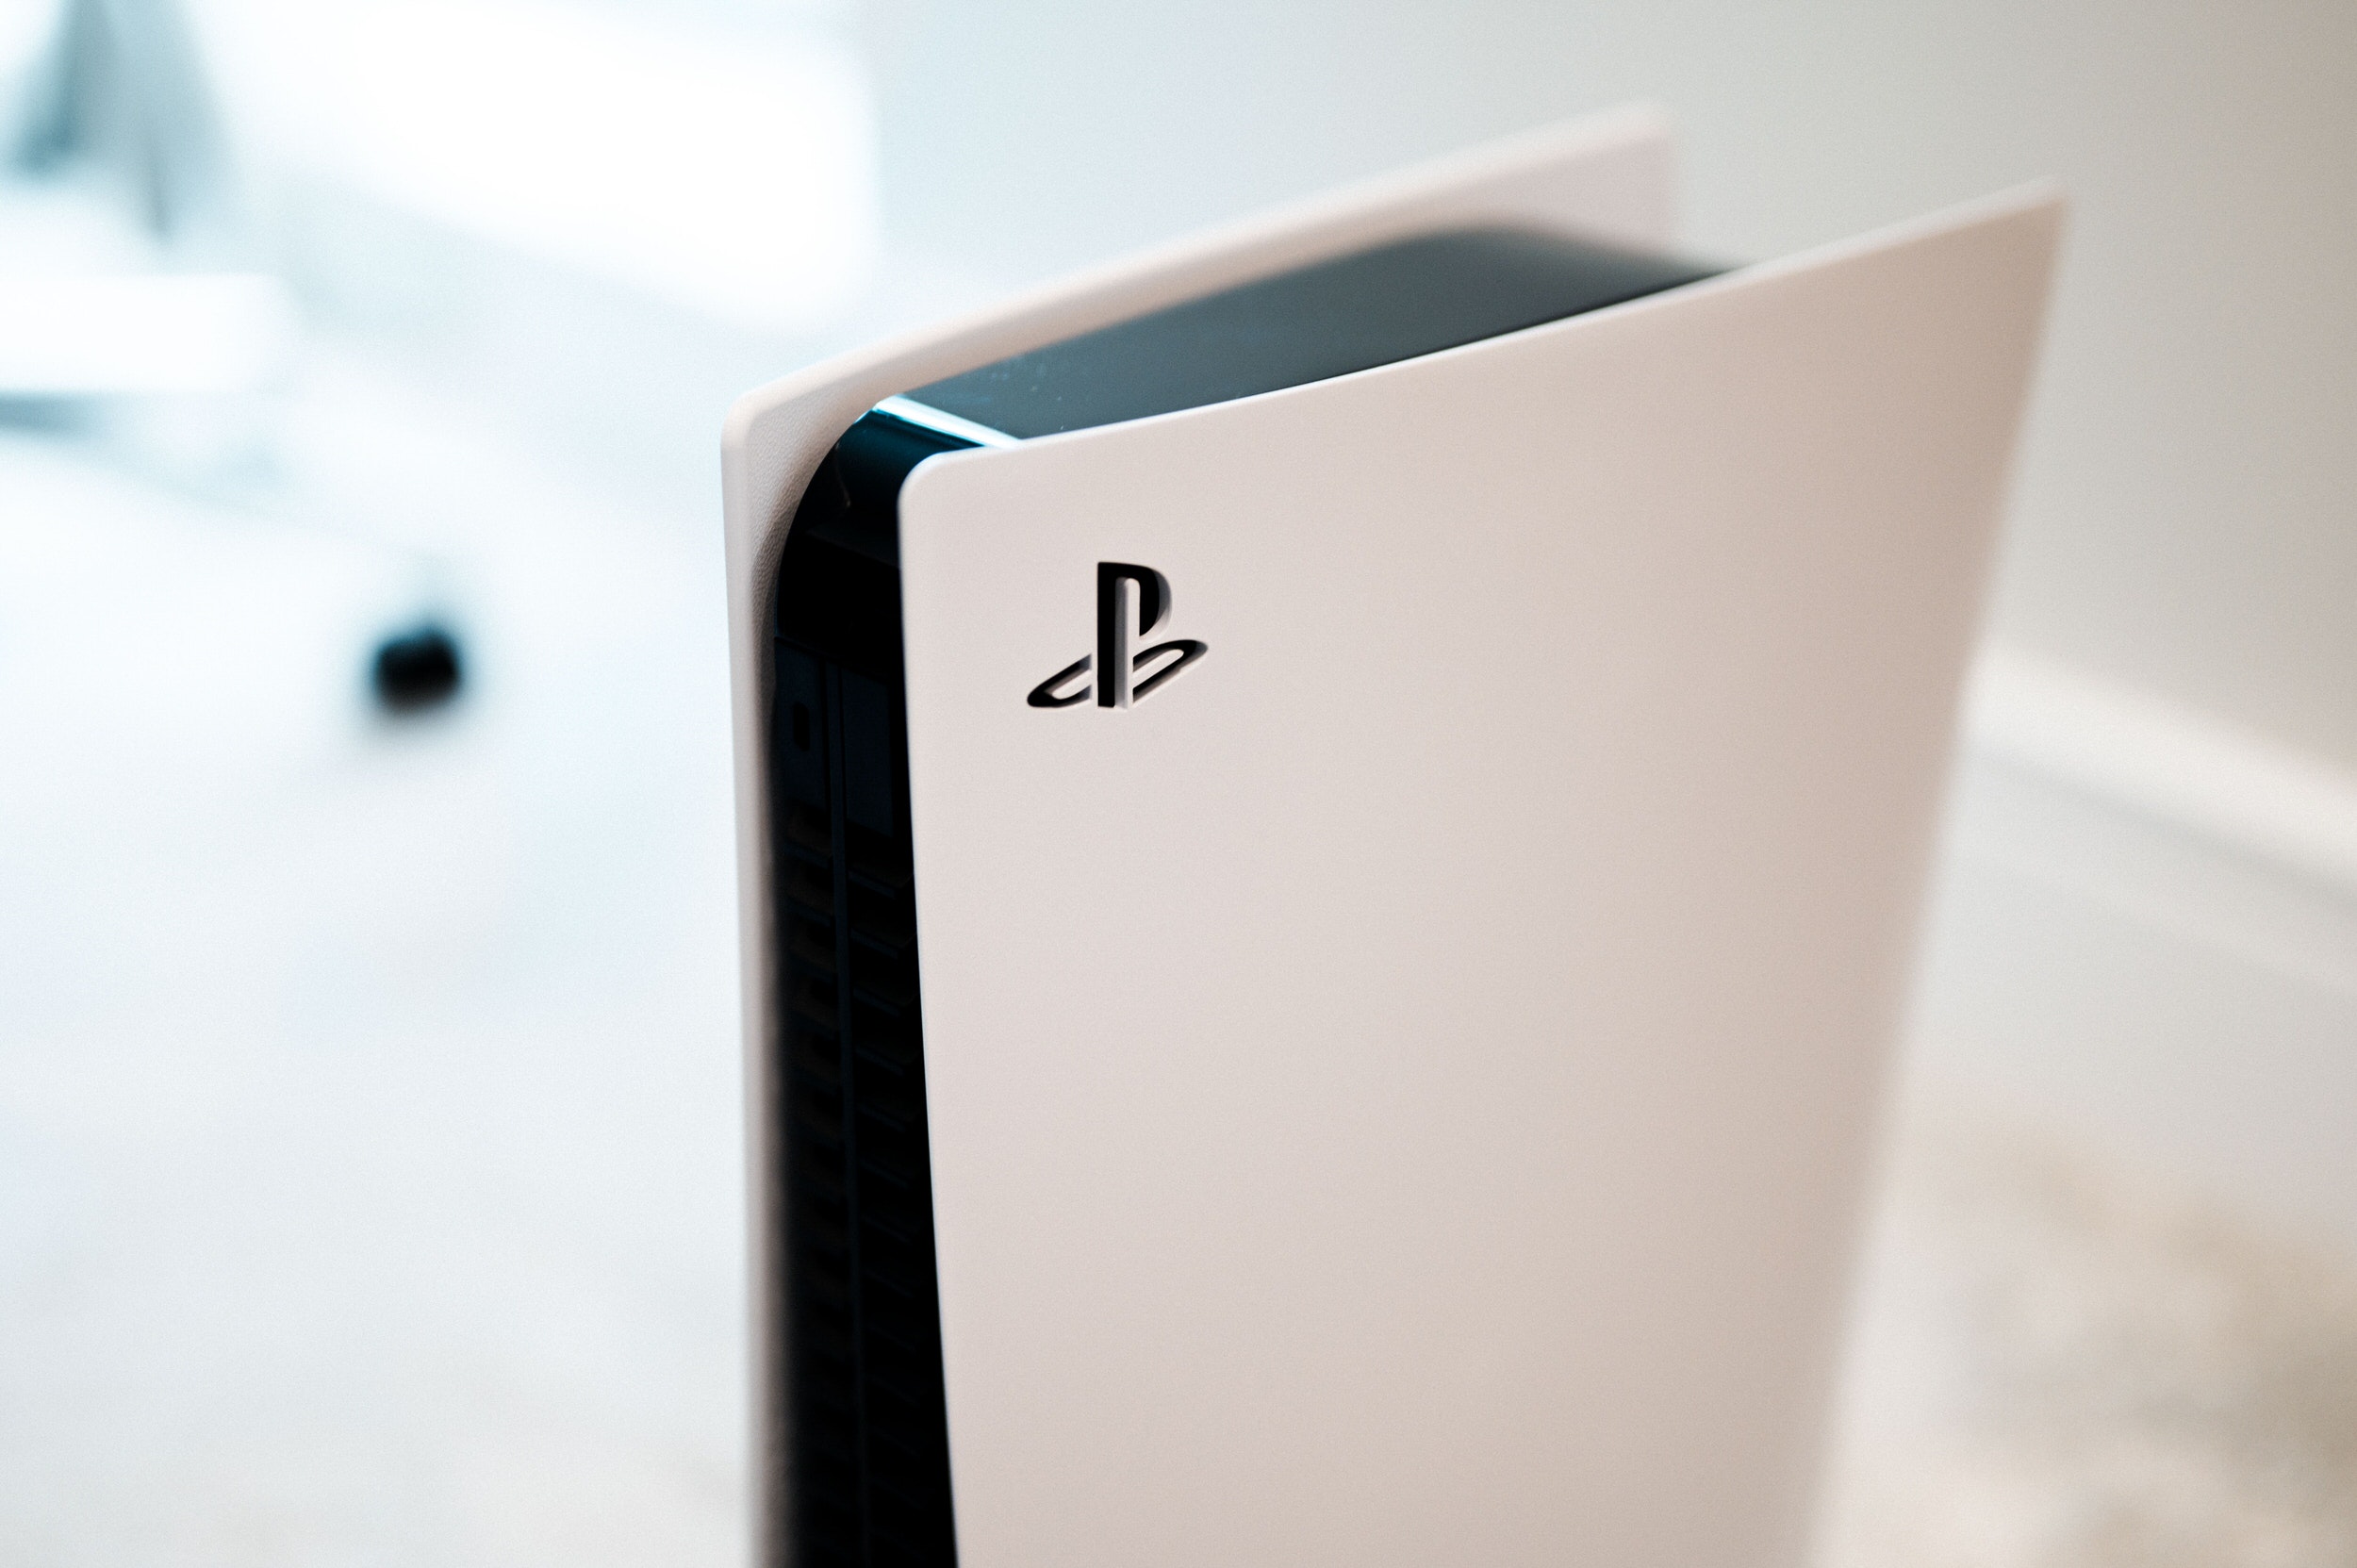 Sony đã bán được 7.8 triệu máy chơi game PlayStation 5